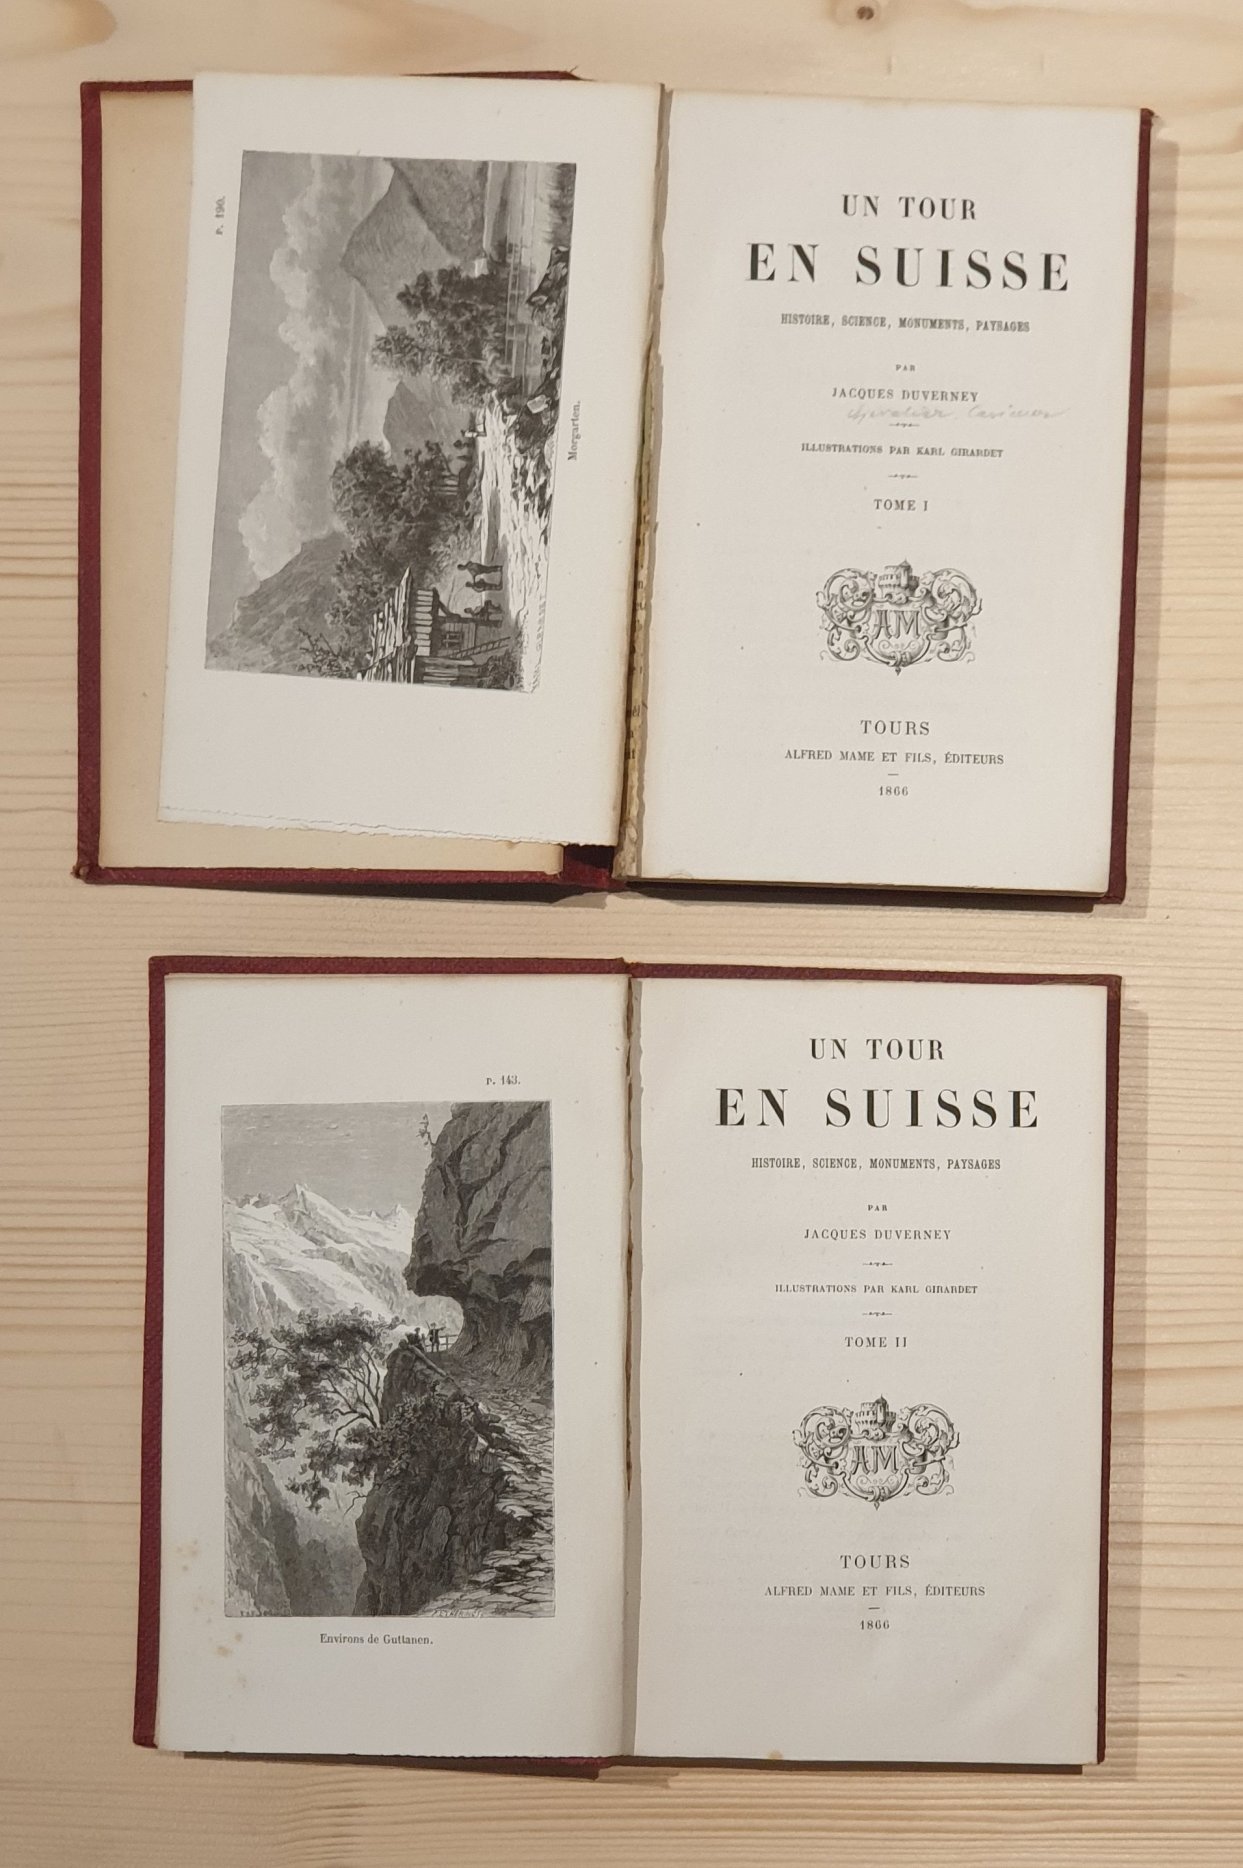 Duverney, Jaques:  Un Tour En Suisse Histoire, Science, Monuments, Paysages. Illustrations par Karl Girardet. 